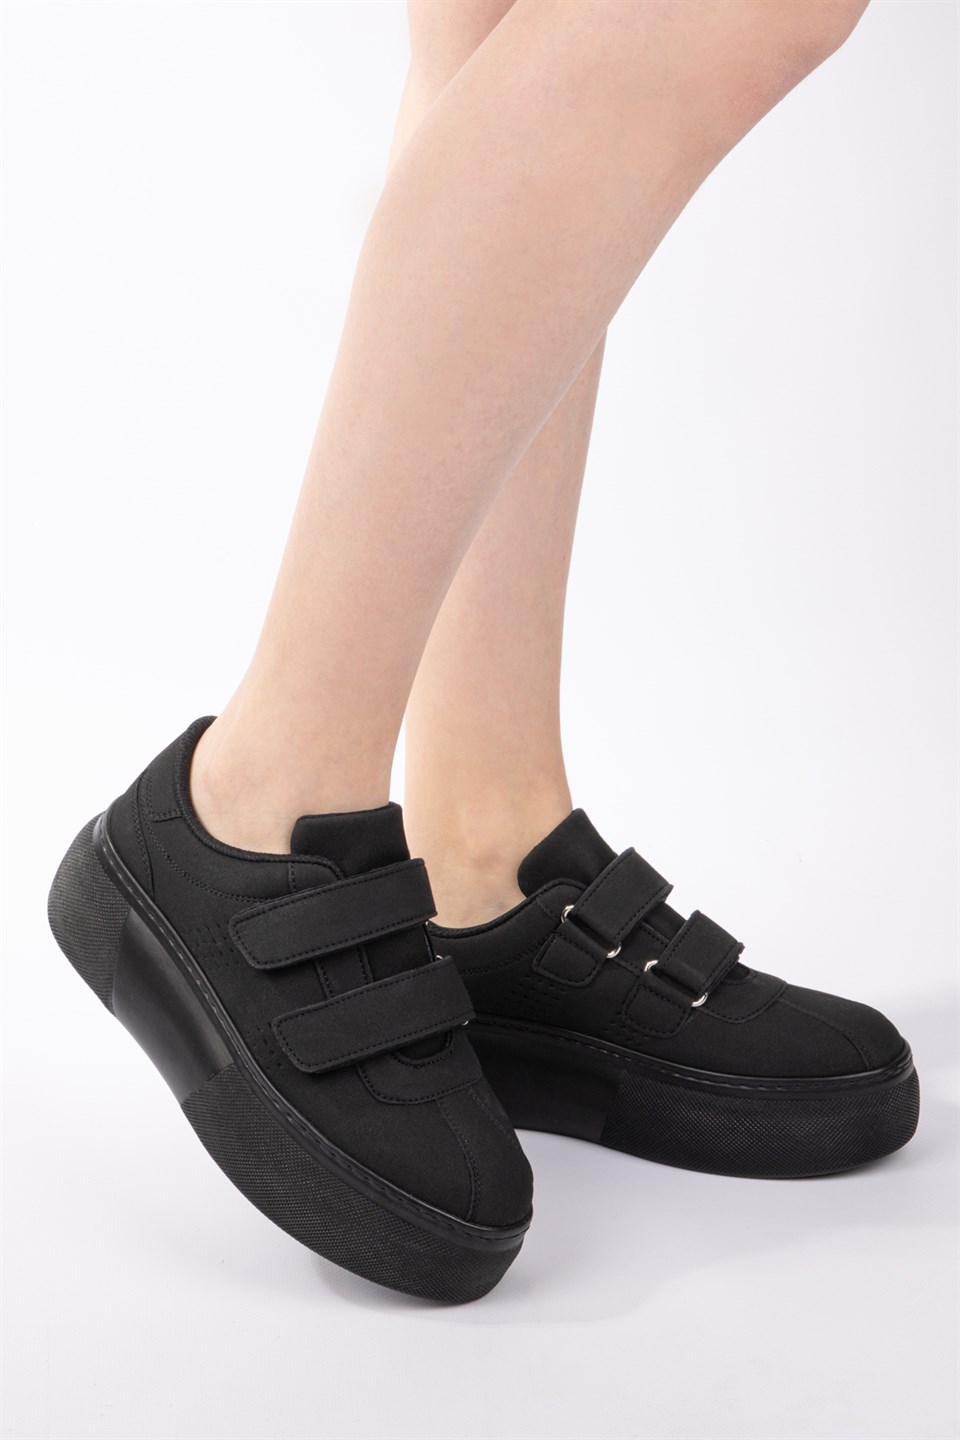 Kadın Siyah Nubuk Cırt Cırtlı Sneaker-Taban 5cm-Yüksek Tabanlı Bantlı Spor  Ayakkabı